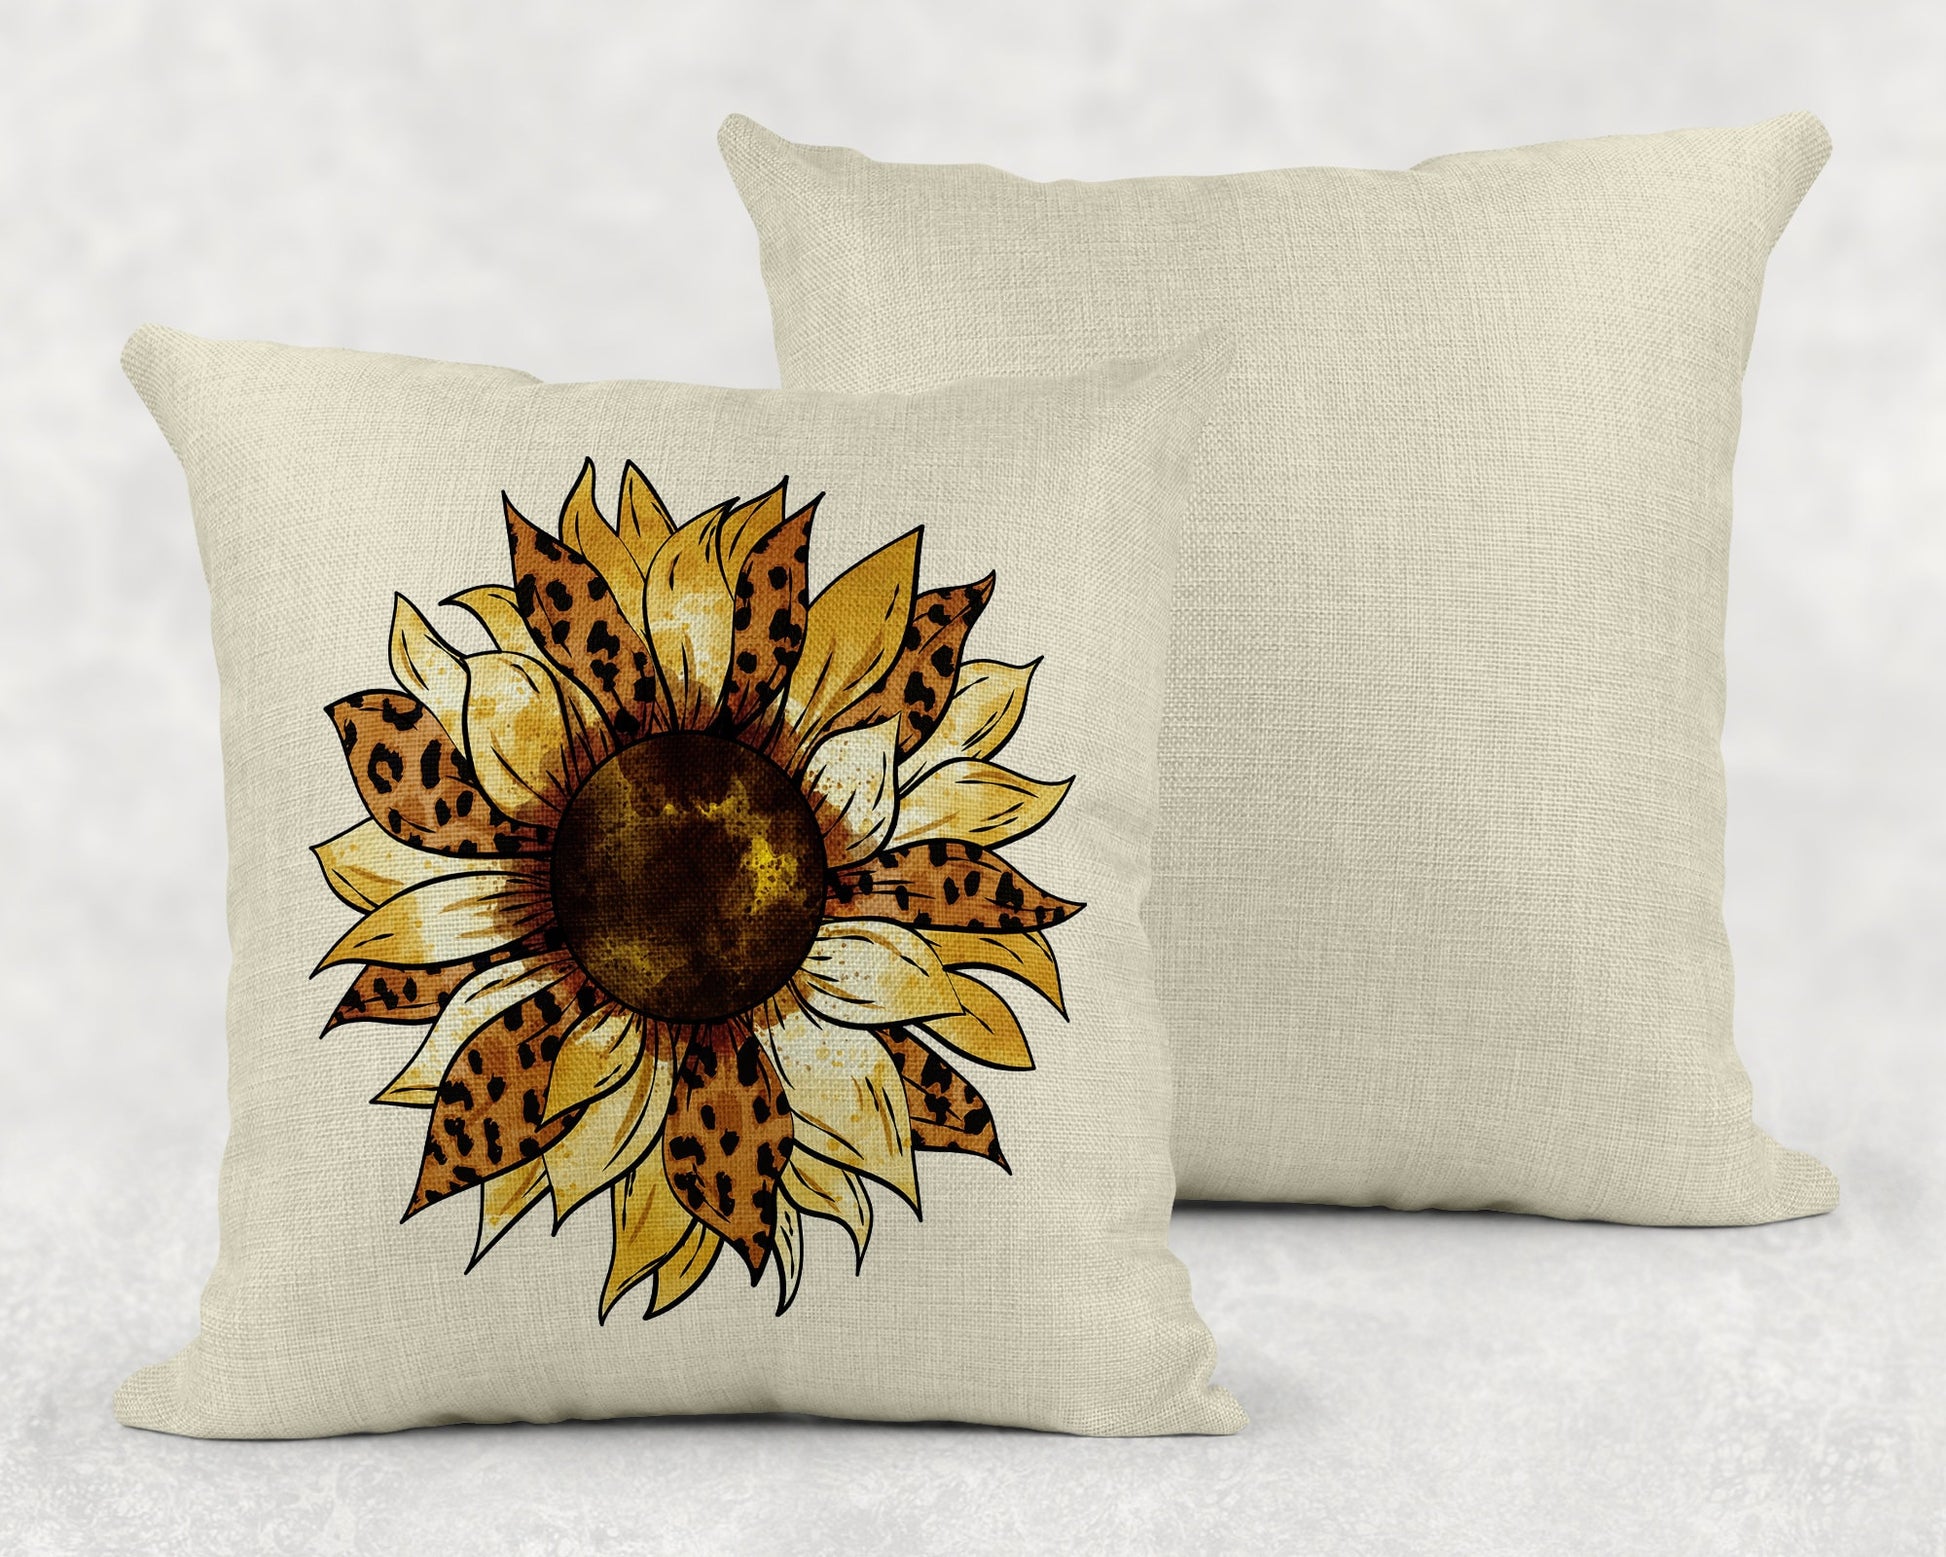 15.75 Inch Sunflower Leopard Print Art Linen Throw Pillow|Home Decor|Decorative Pillows| - Schoppix Gifts